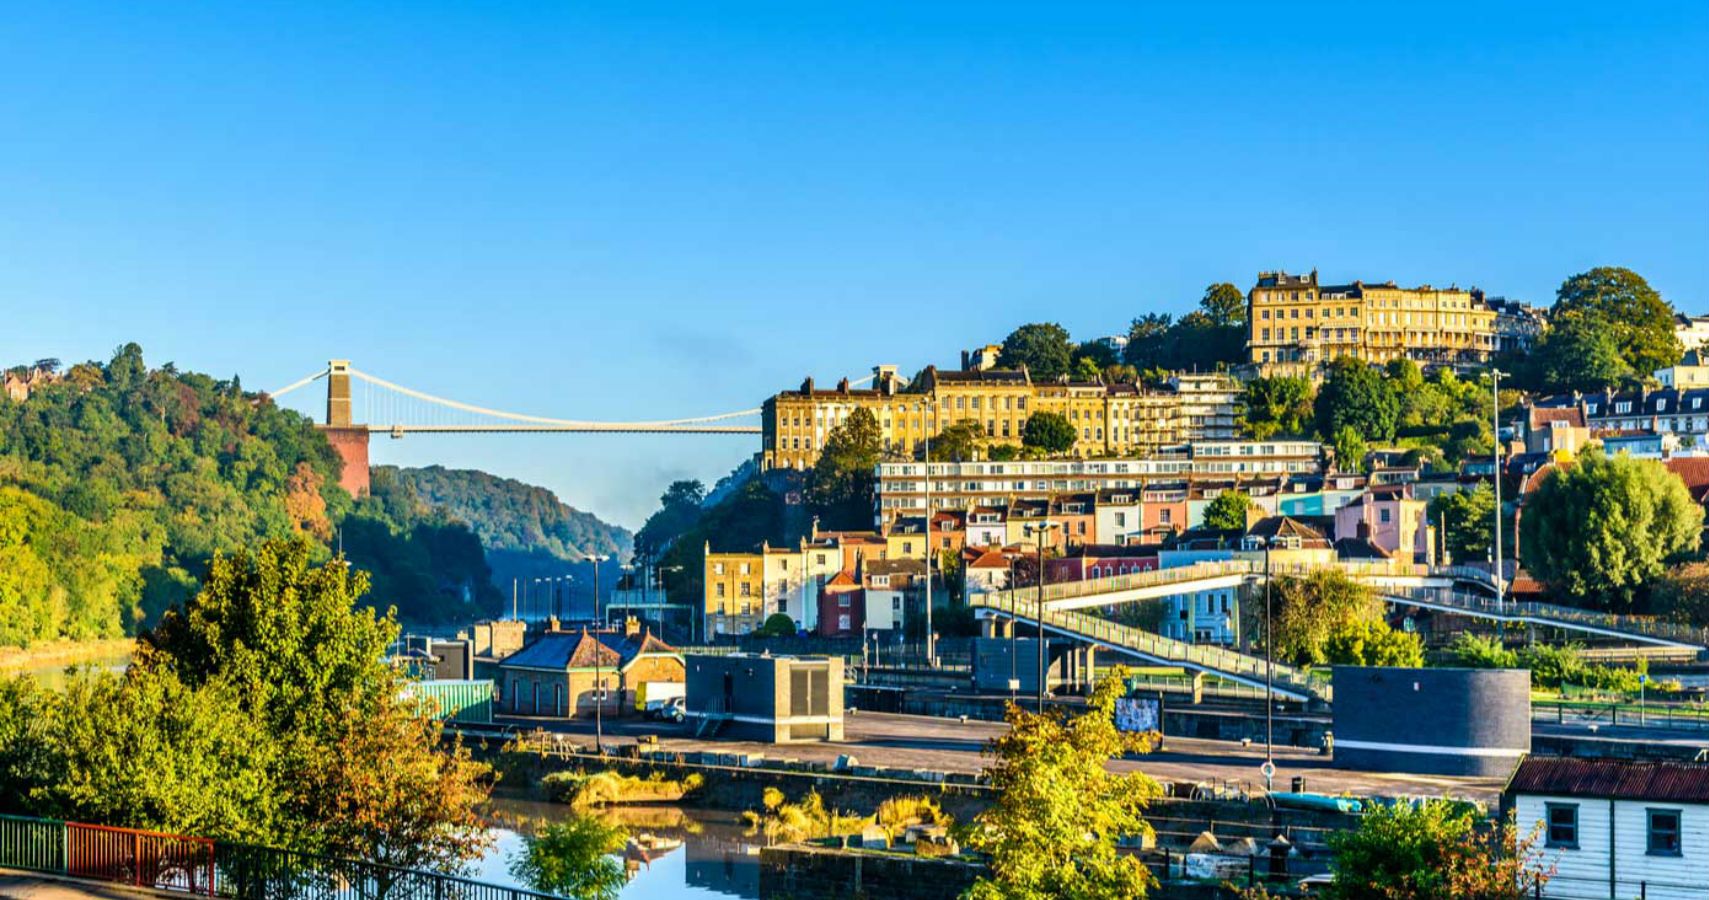 Bristol no Reino Unido foi nomeada a capital vegana do